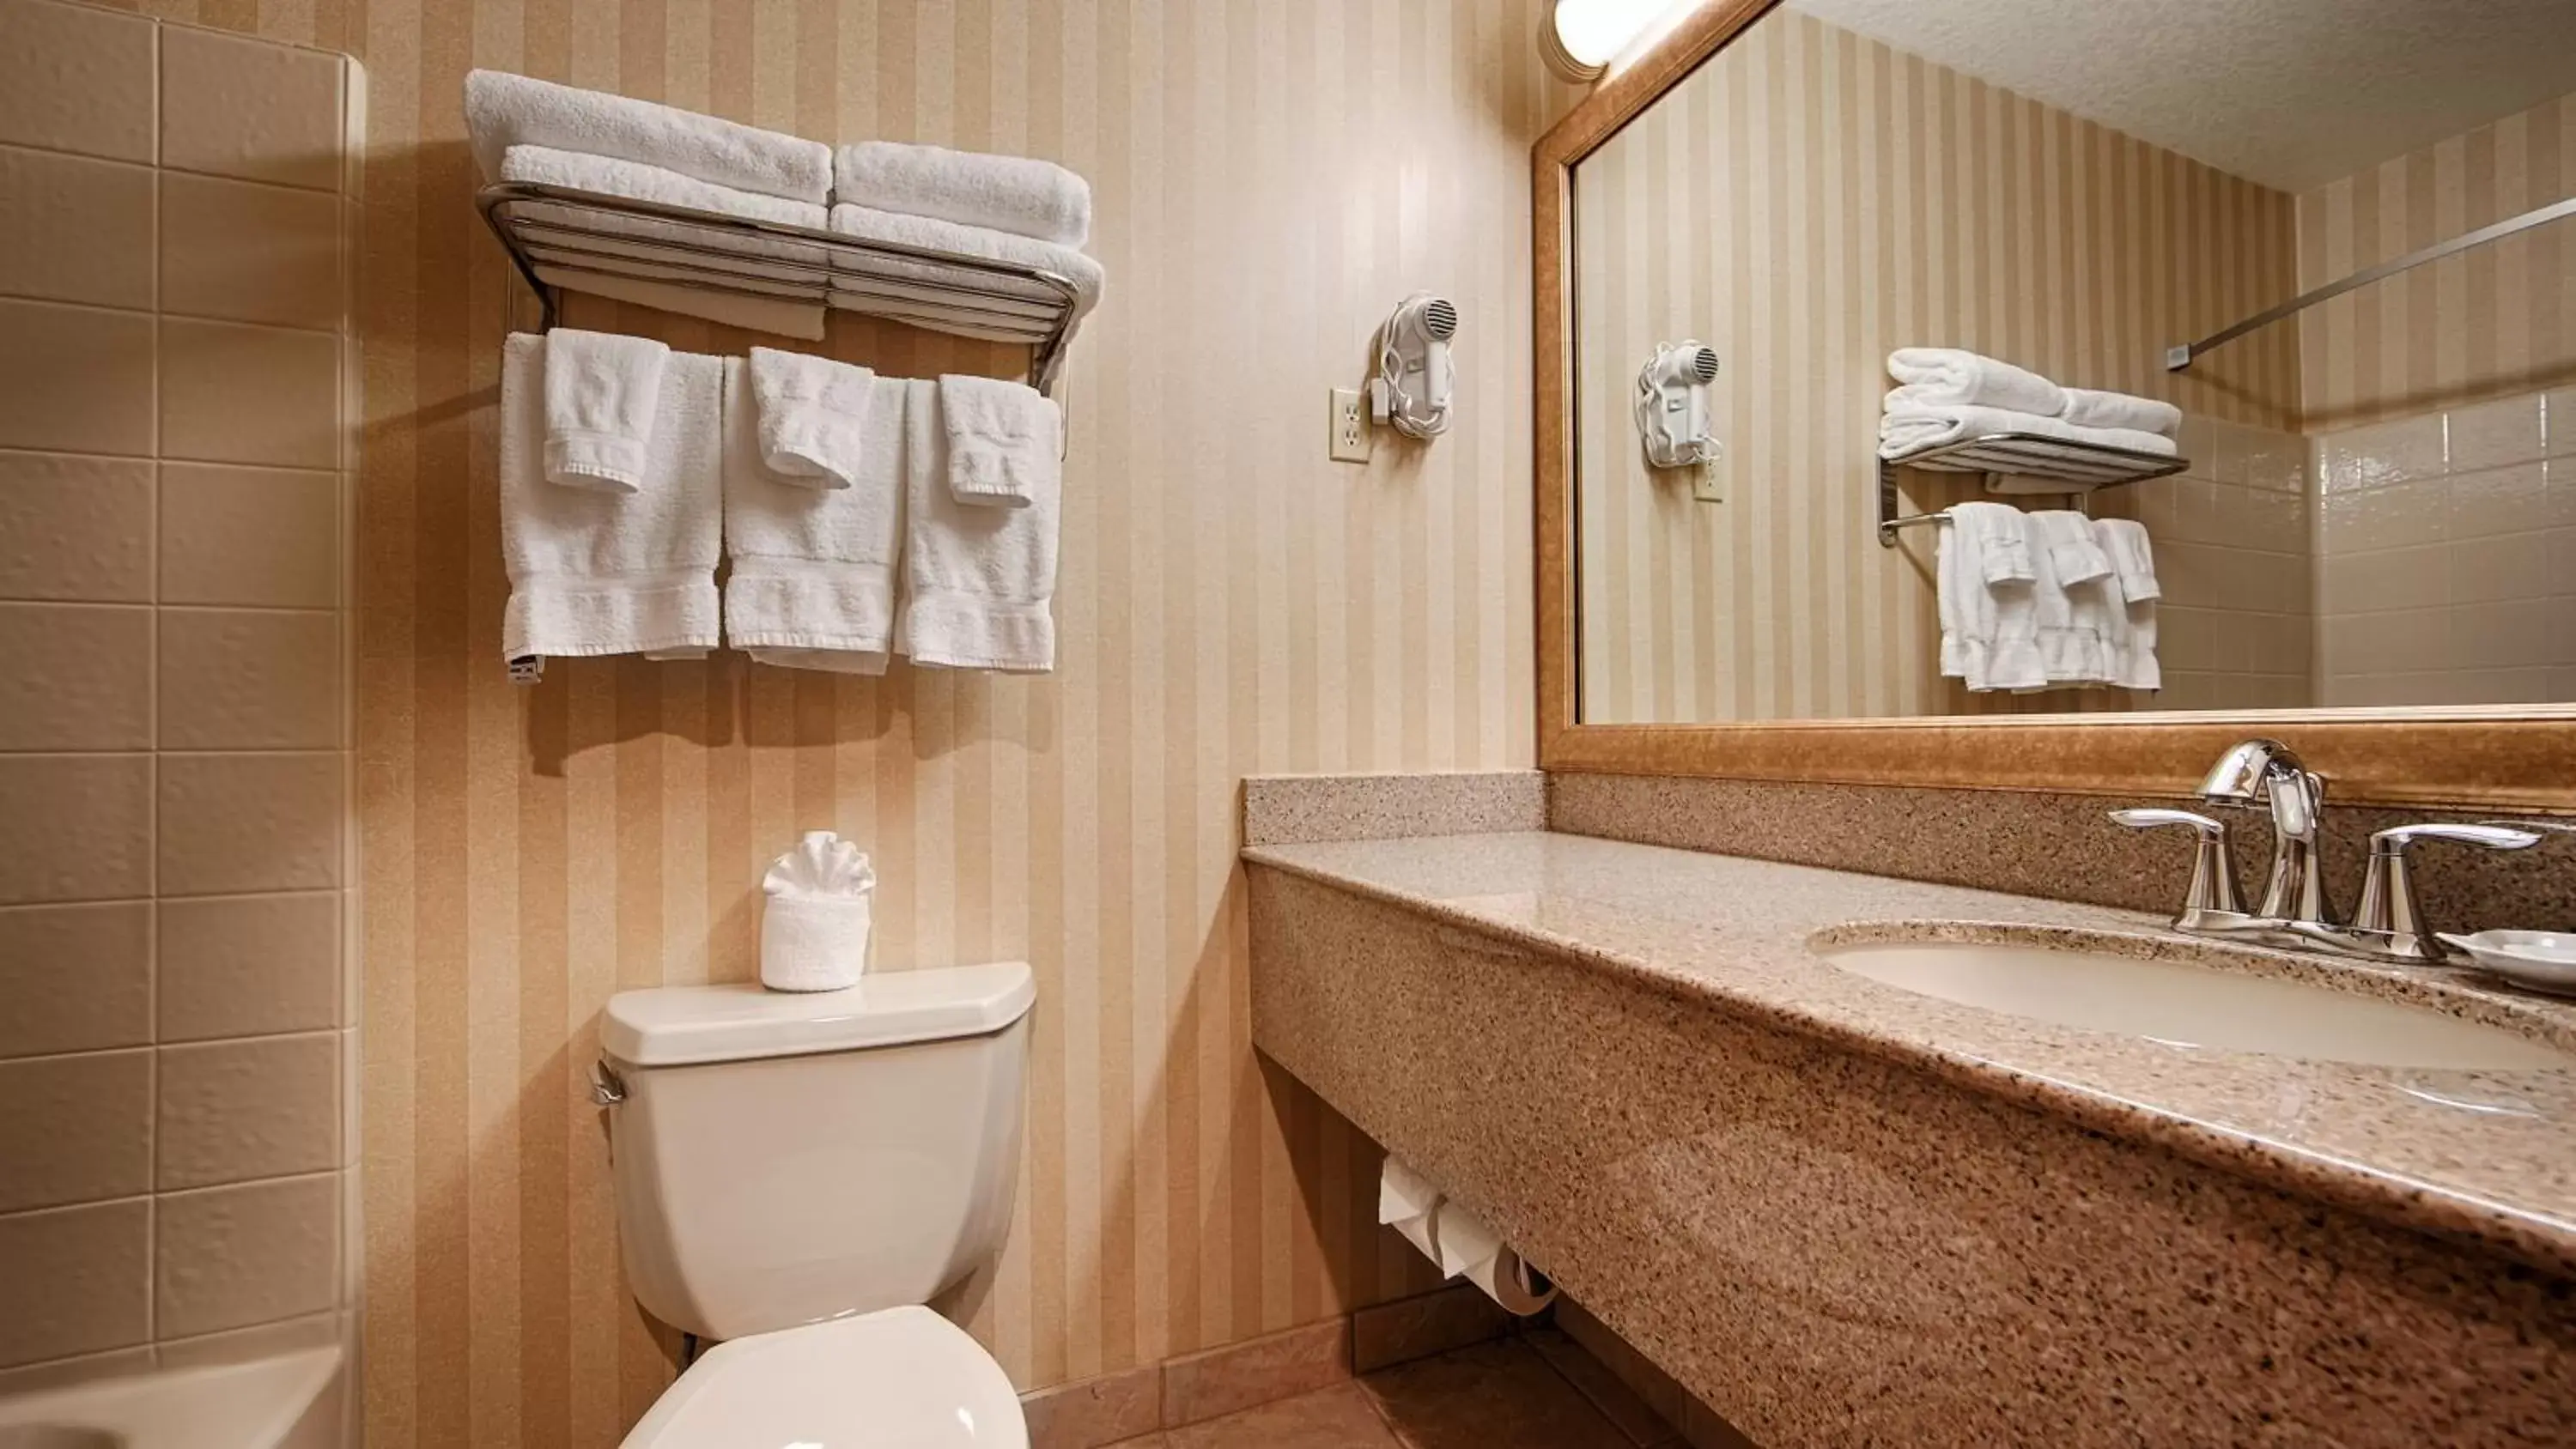 Photo of the whole room, Bathroom in Best Western Plus Landmark Inn